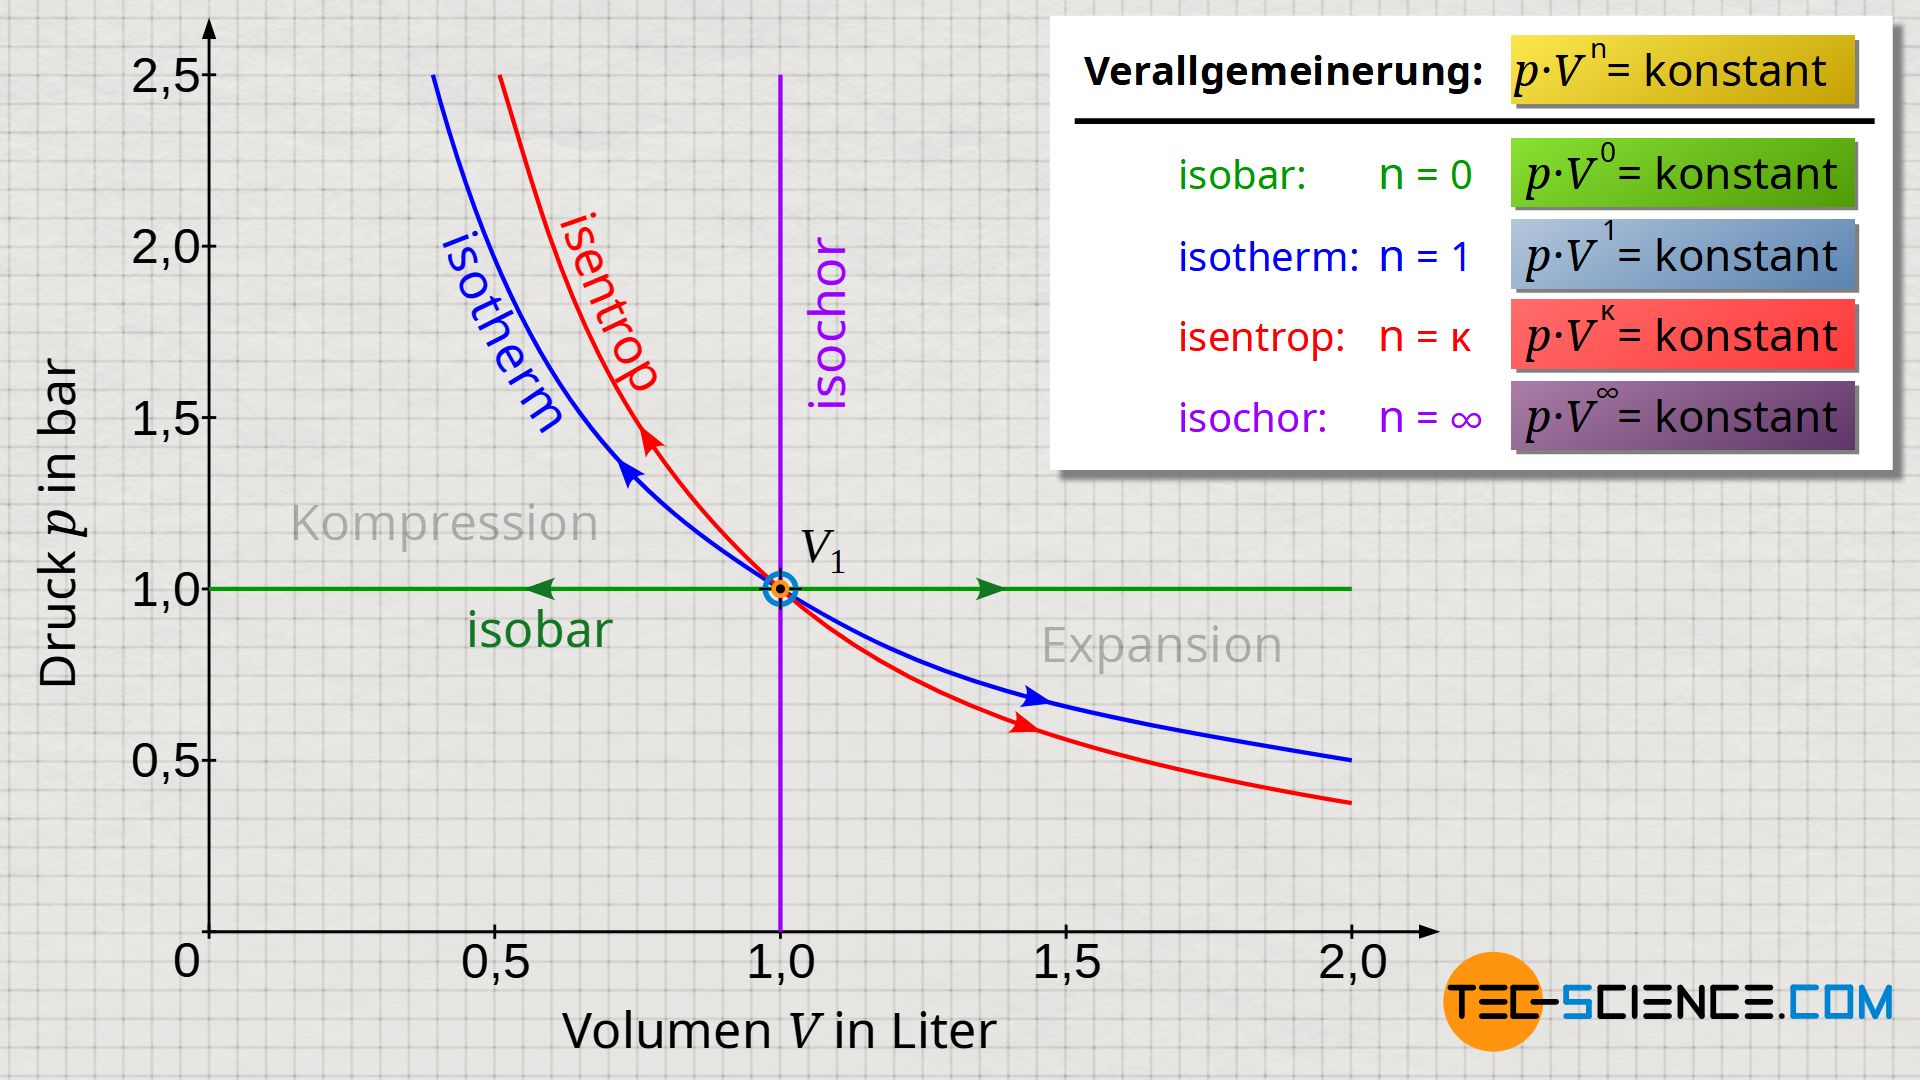 Isobarer, isothermer, isochorer und isentroper Prozess als Spezialfälle eines polytropen Prozesses